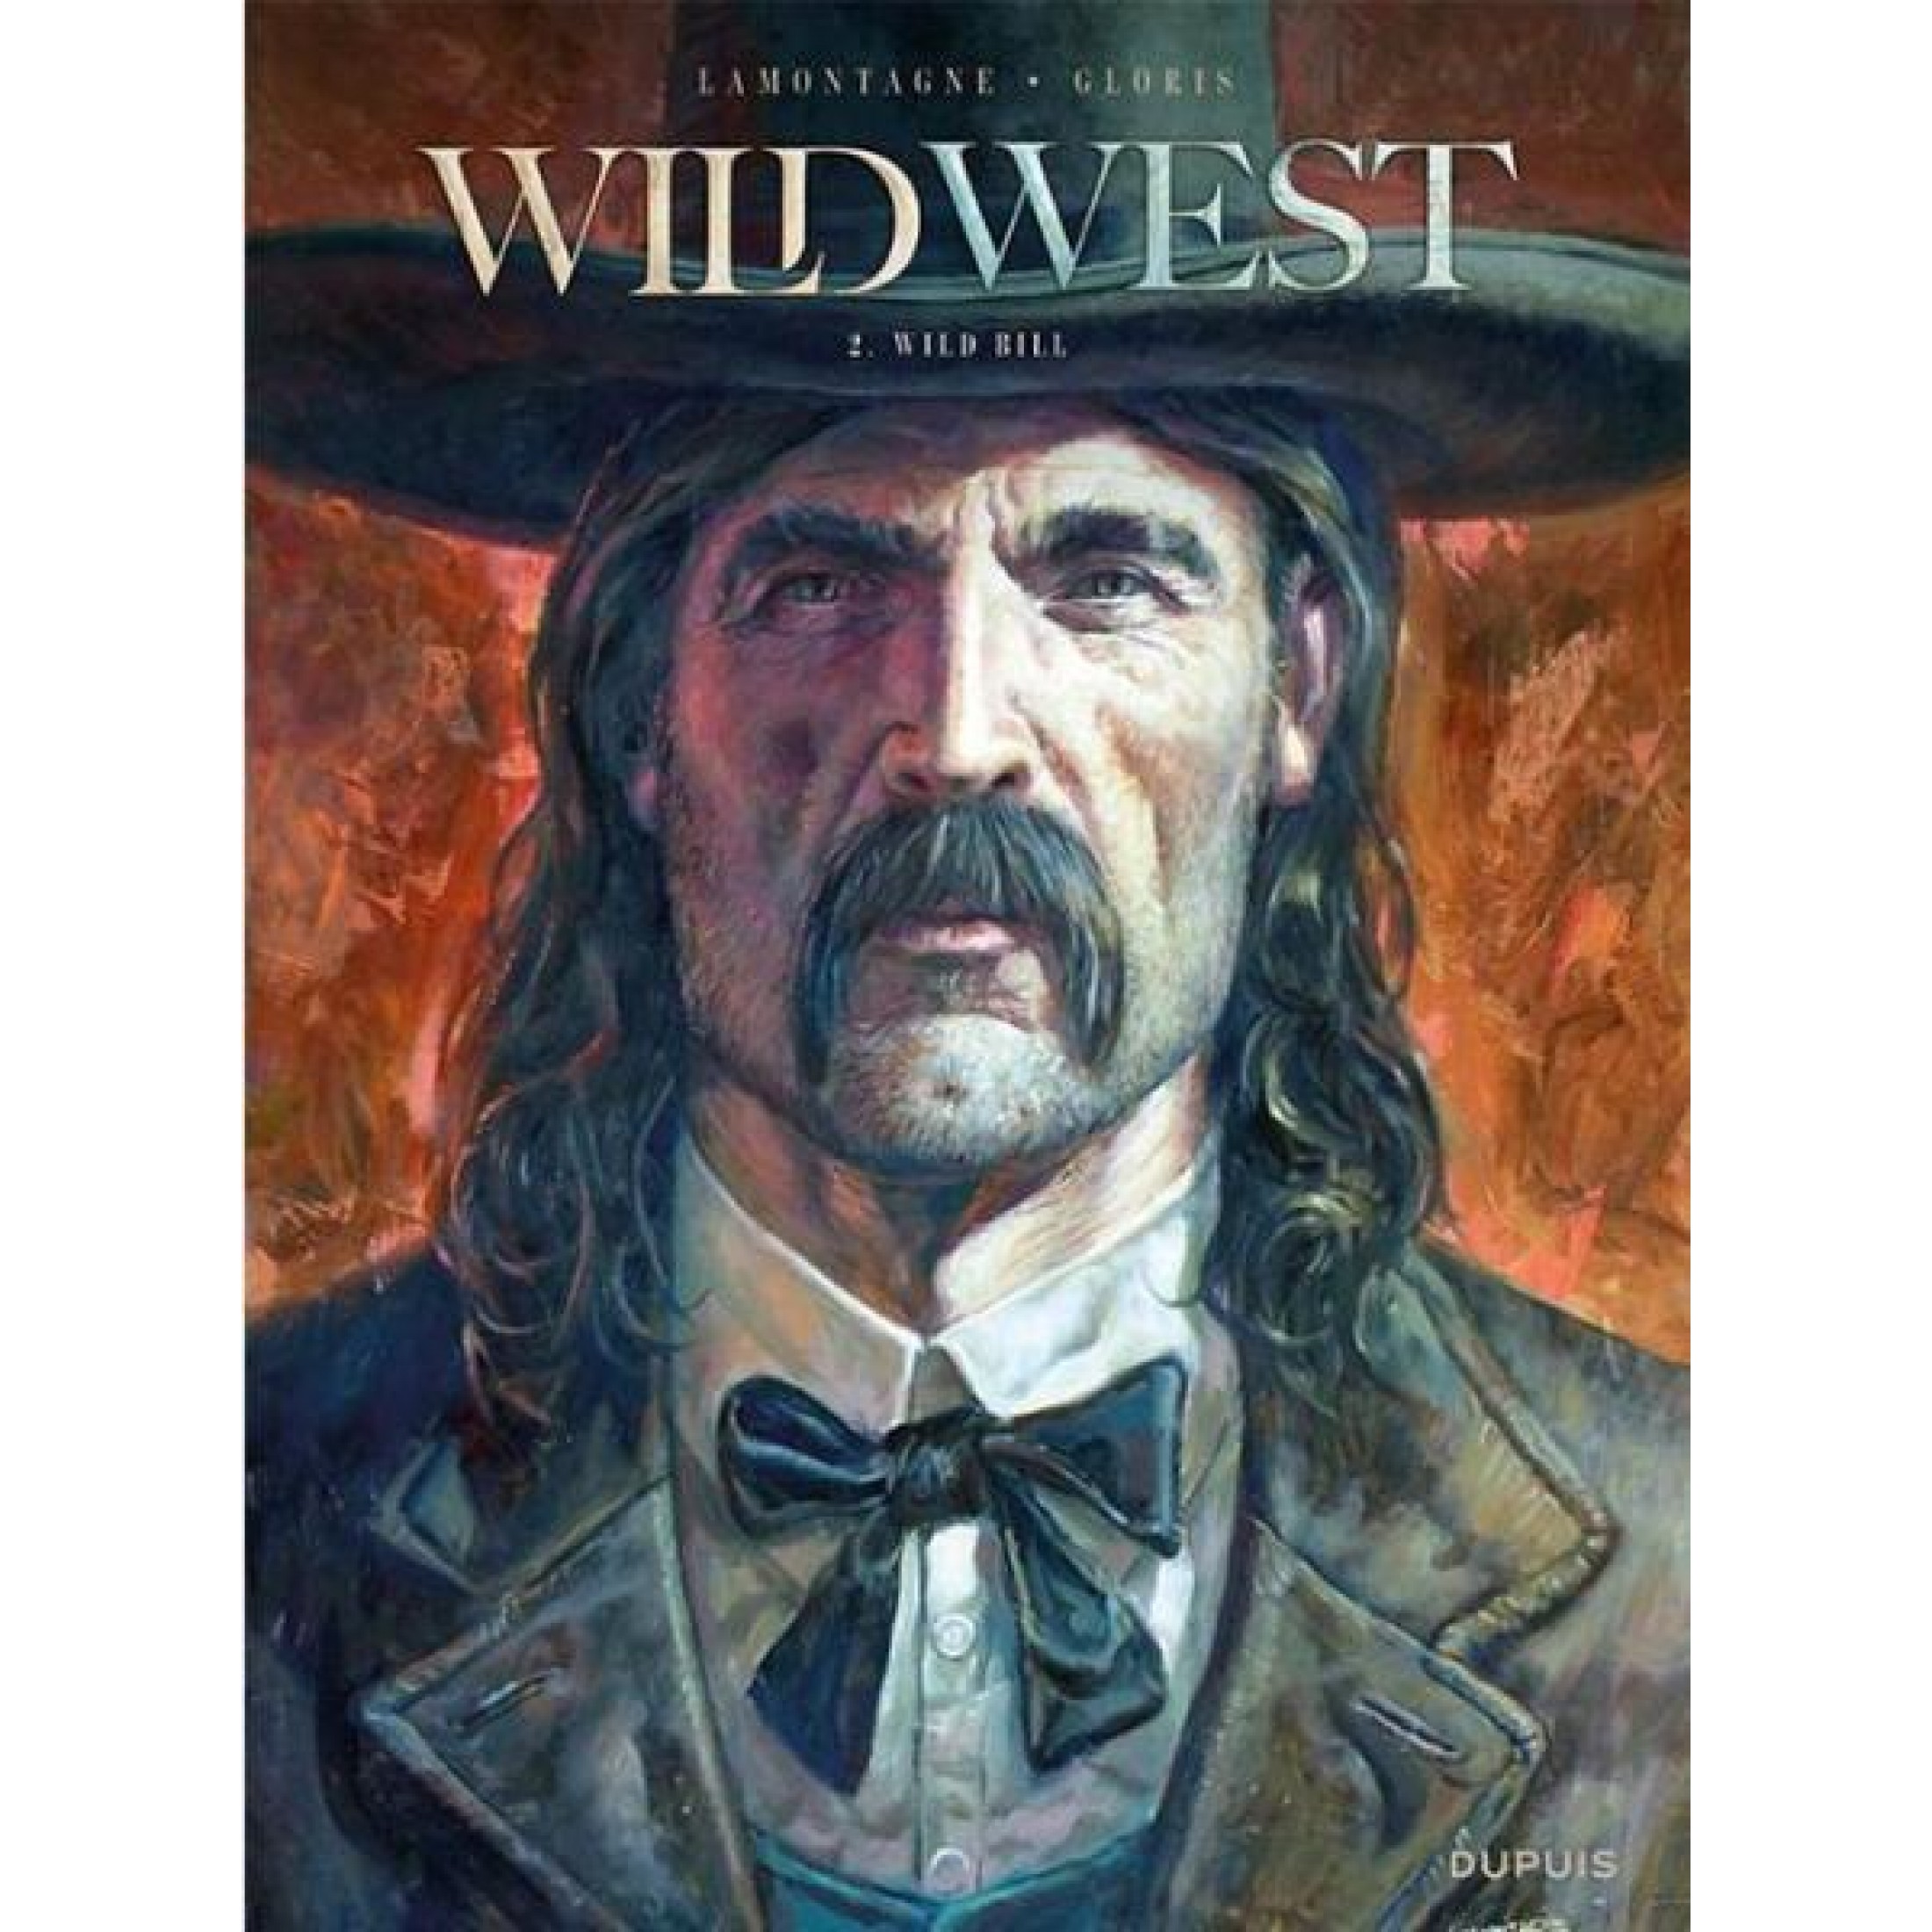 Wild West : WILD WEST SC 002 wild bill